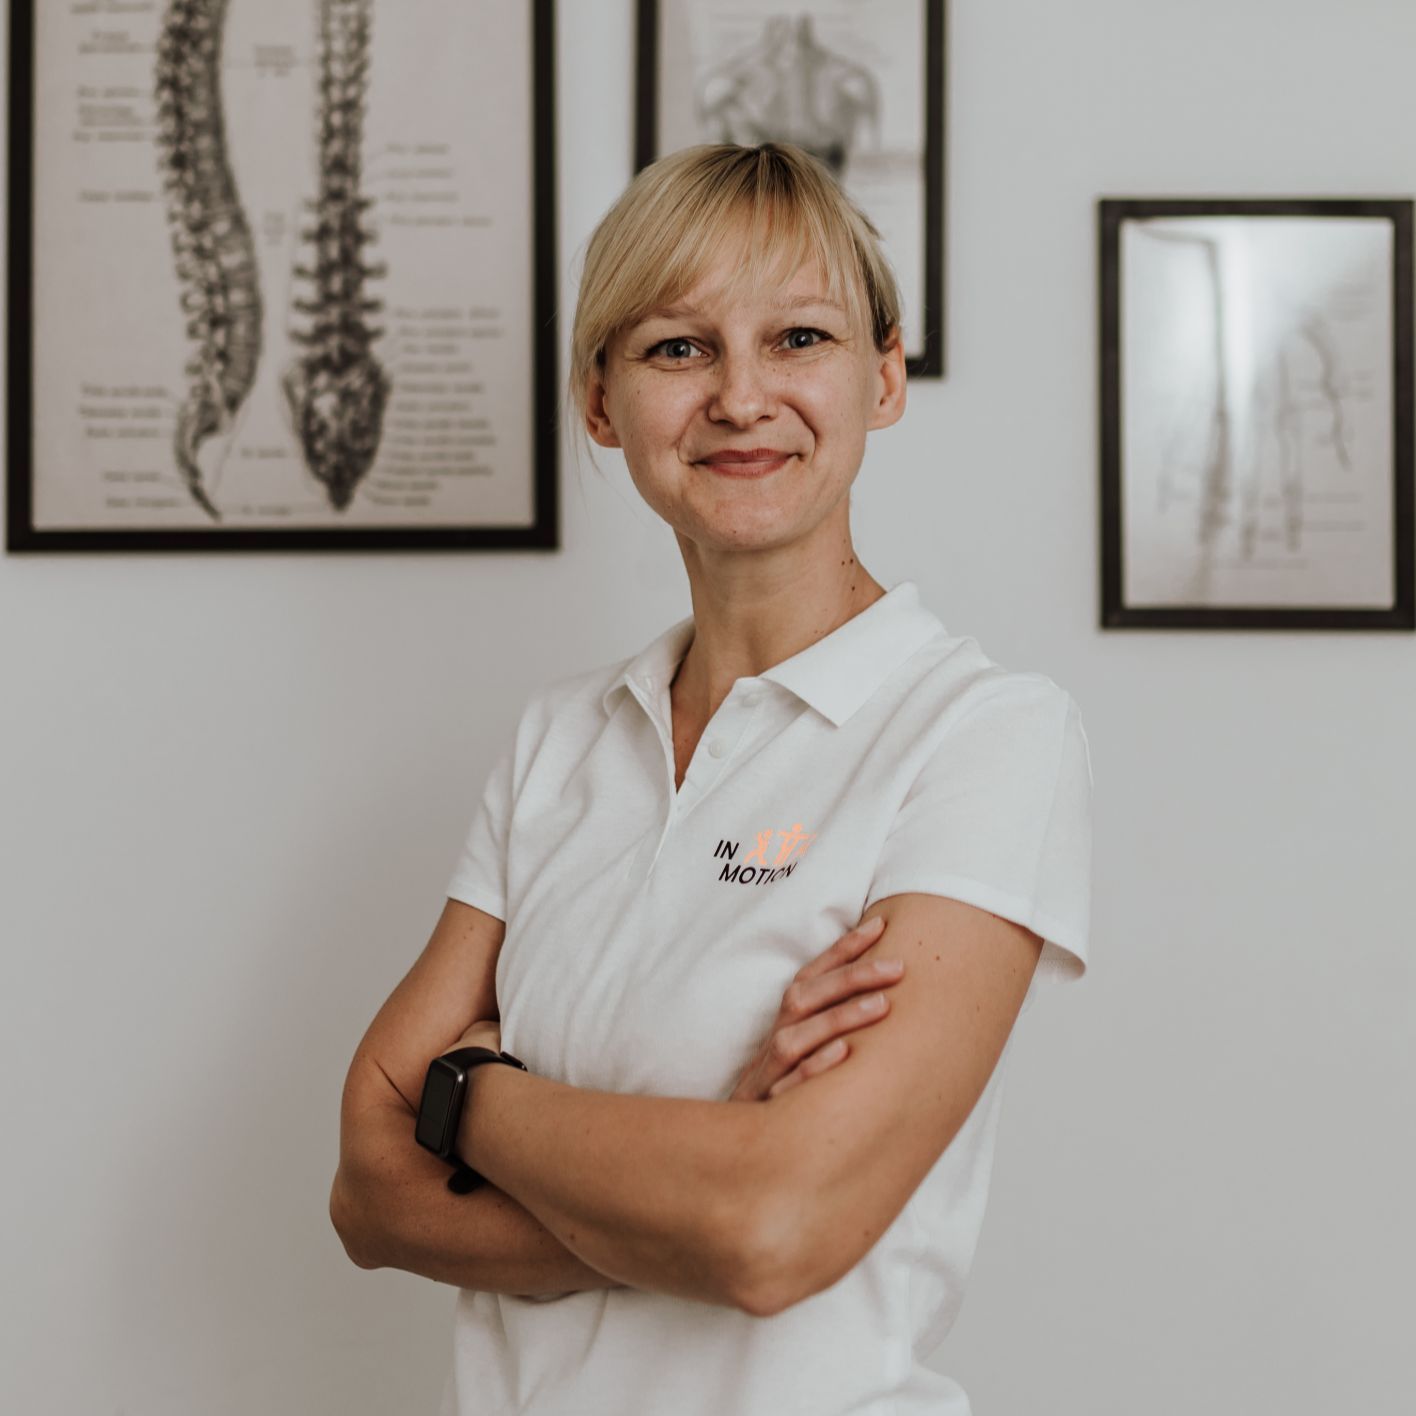 Małgorzata Żerdzińska - in.motion - fizjoterapia i terapia SI